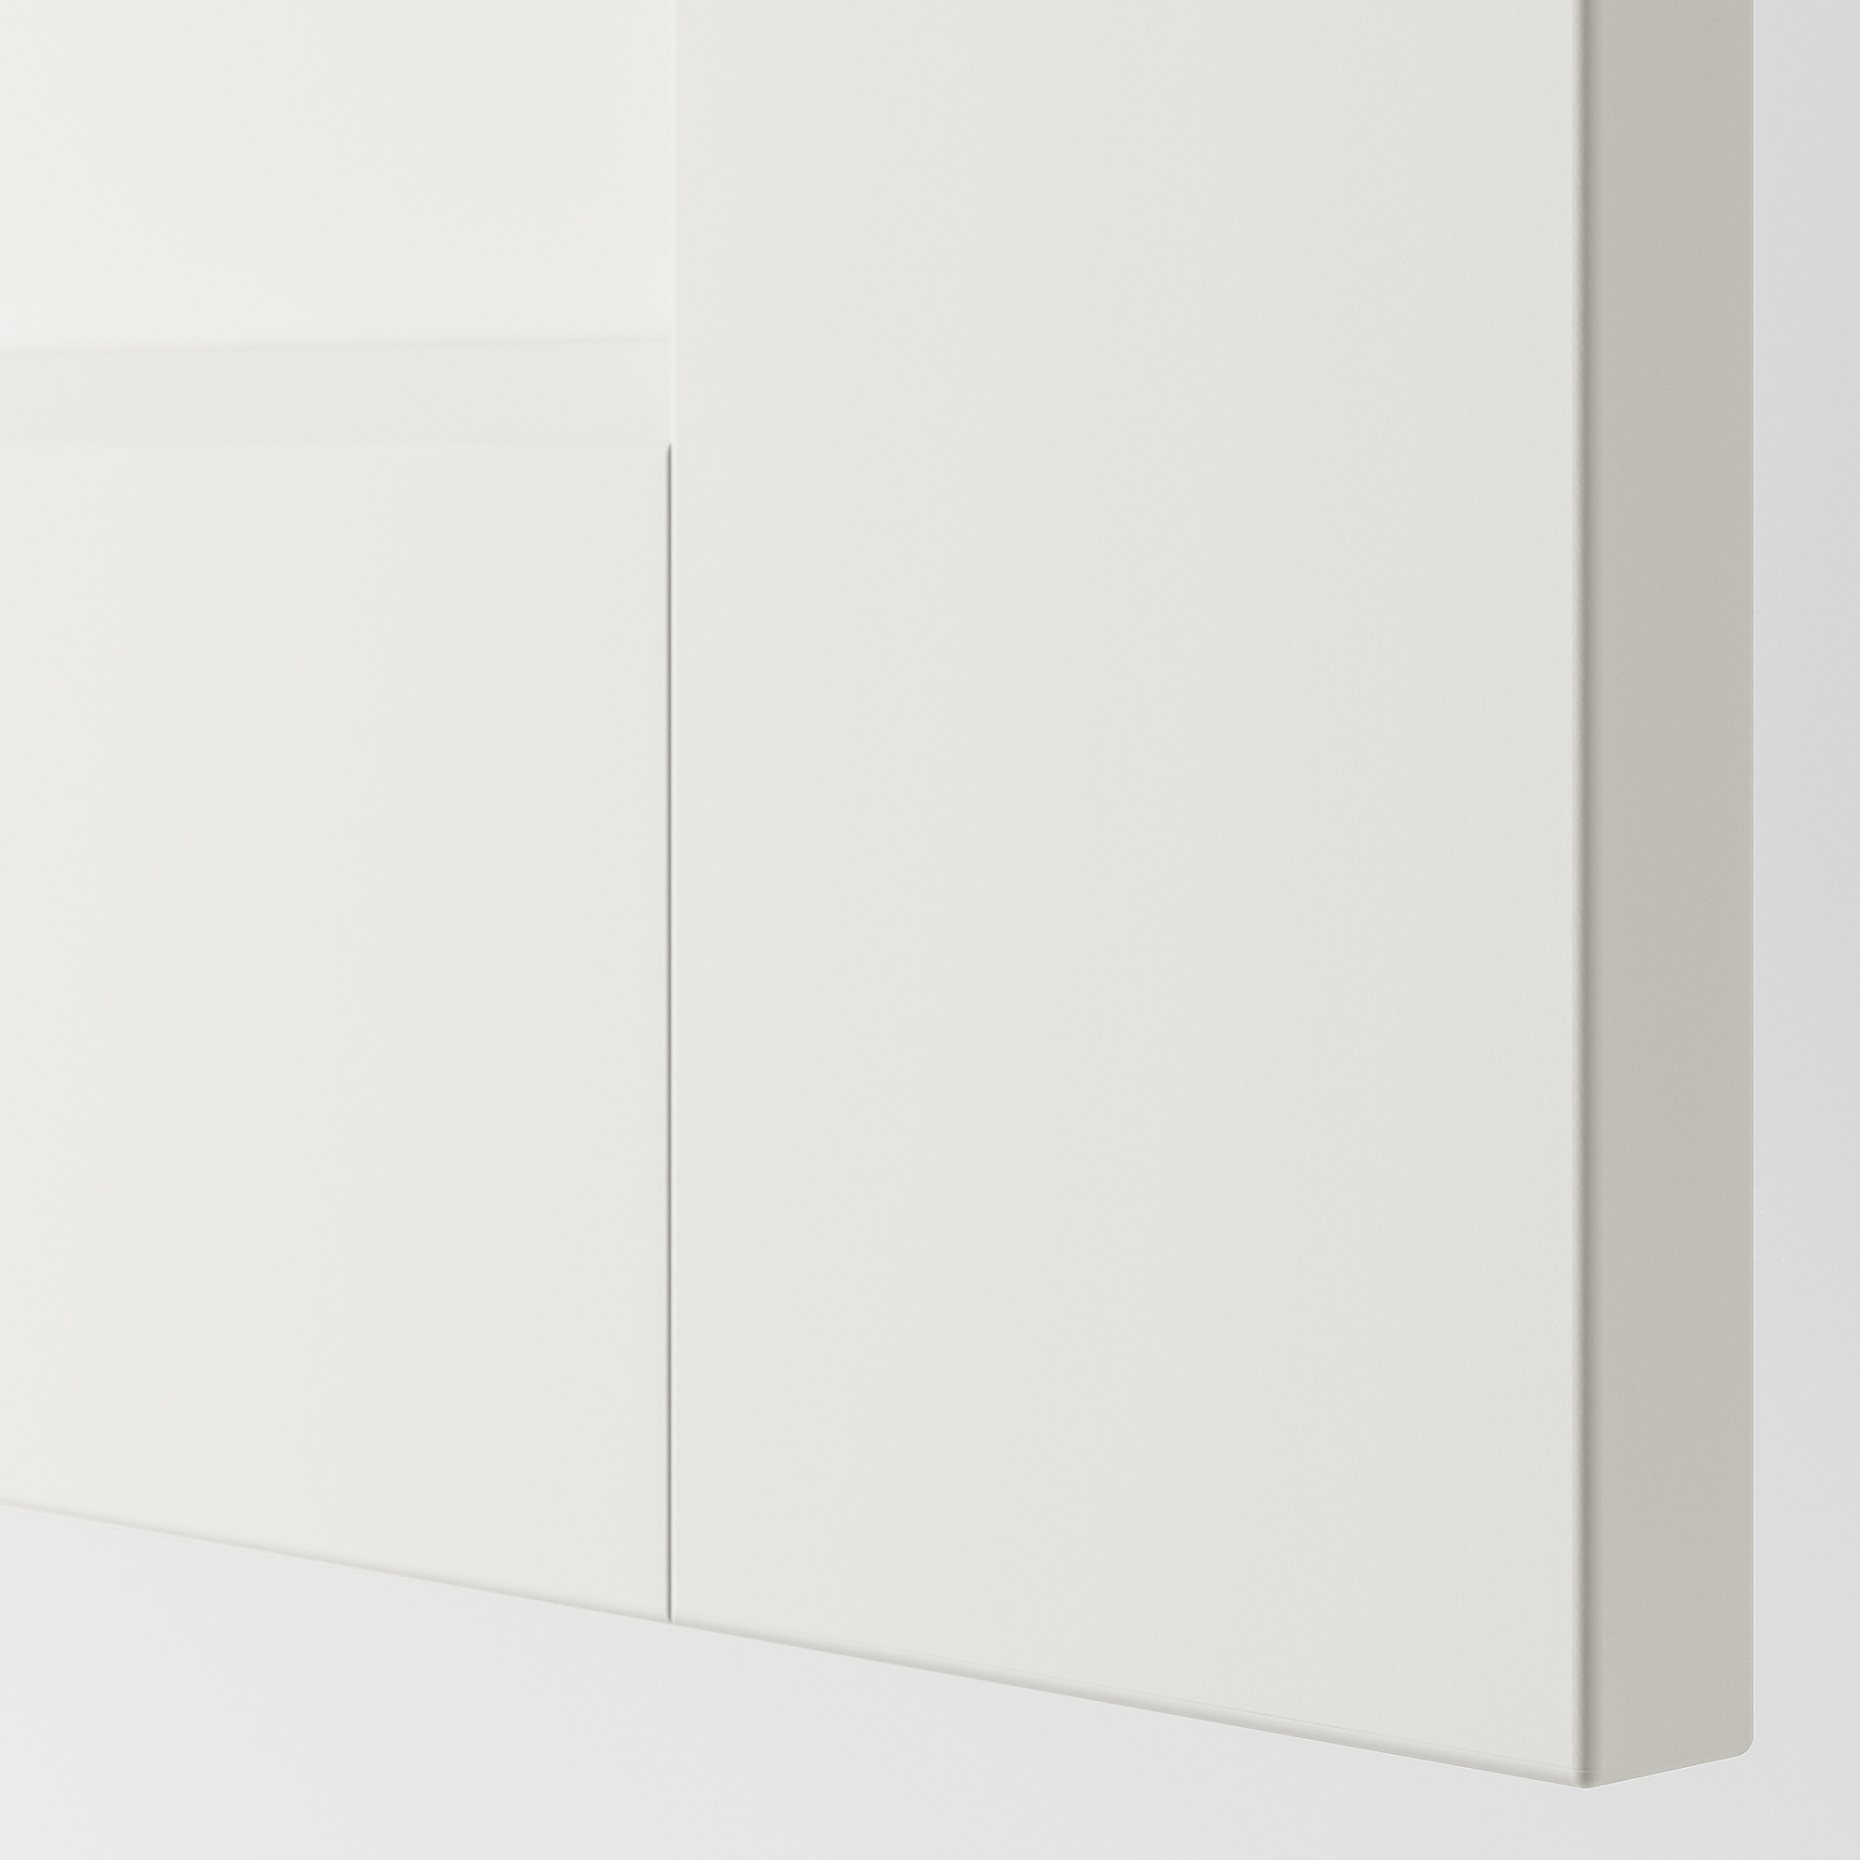 GRIMO, door with hinges, 50x229 cm, 591.835.83